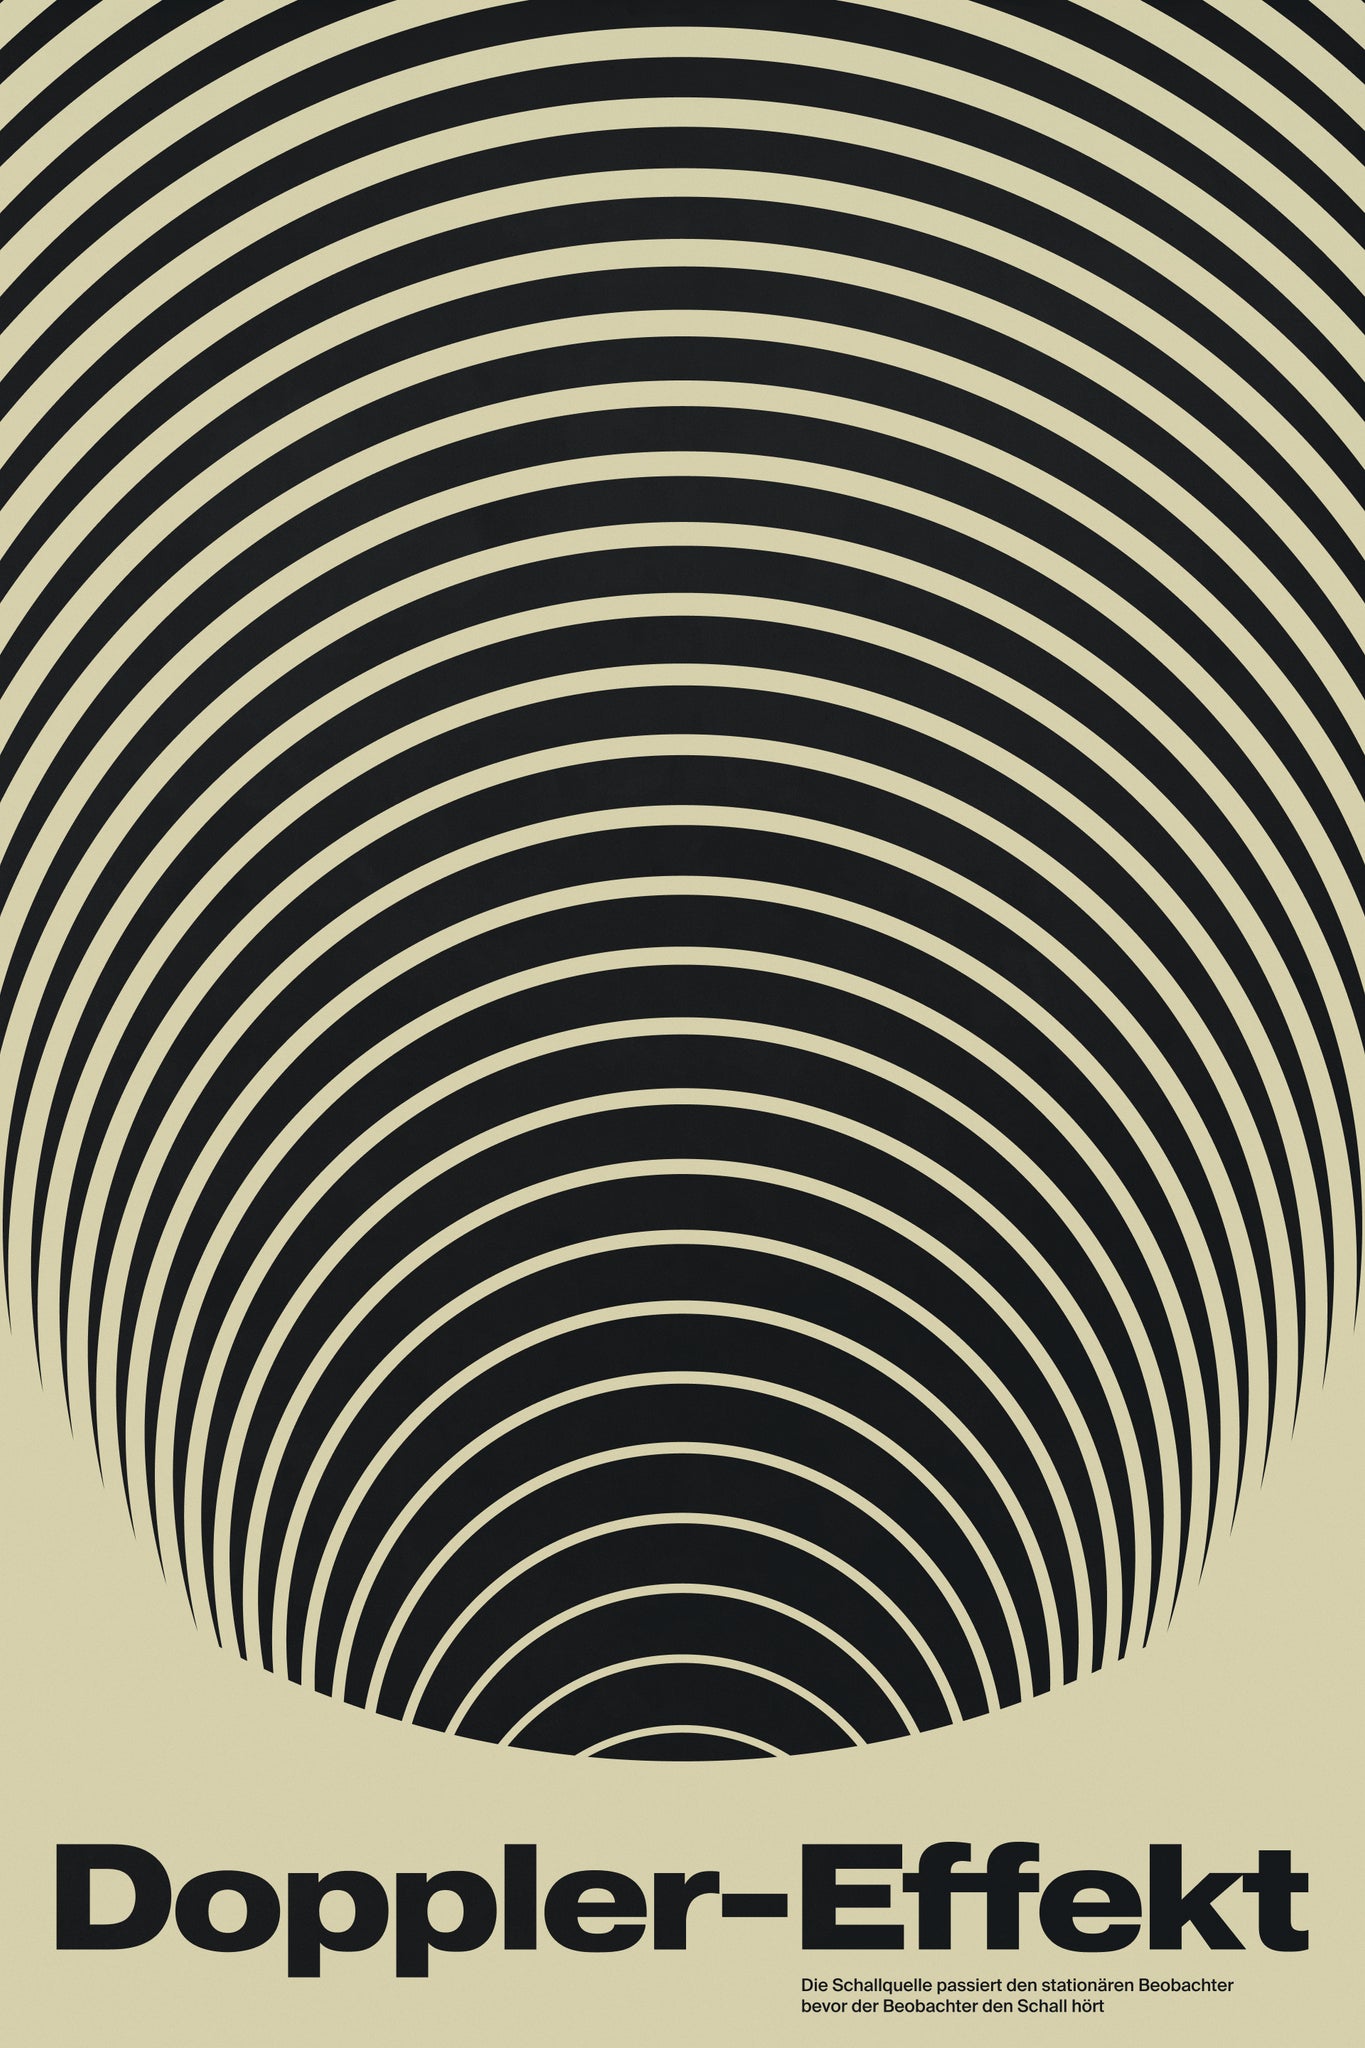 Doppler-Effekt poster by Xtian Miller via SIGNAL A